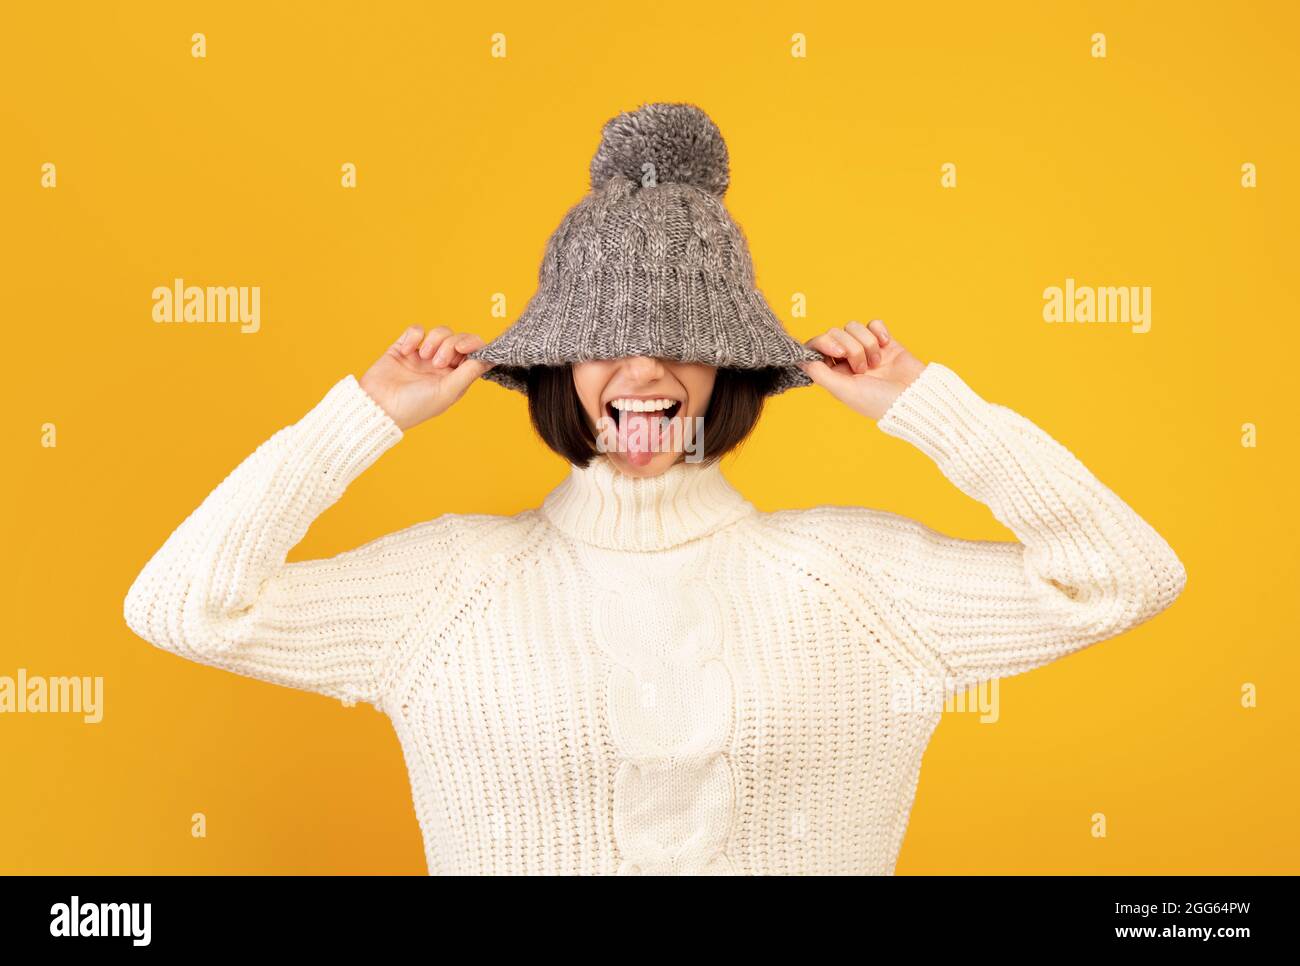 Jeune femme ludique tirant vers le bas chapeau de laine et en collant hors de sa langue, se moquant sur fond jaune Banque D'Images